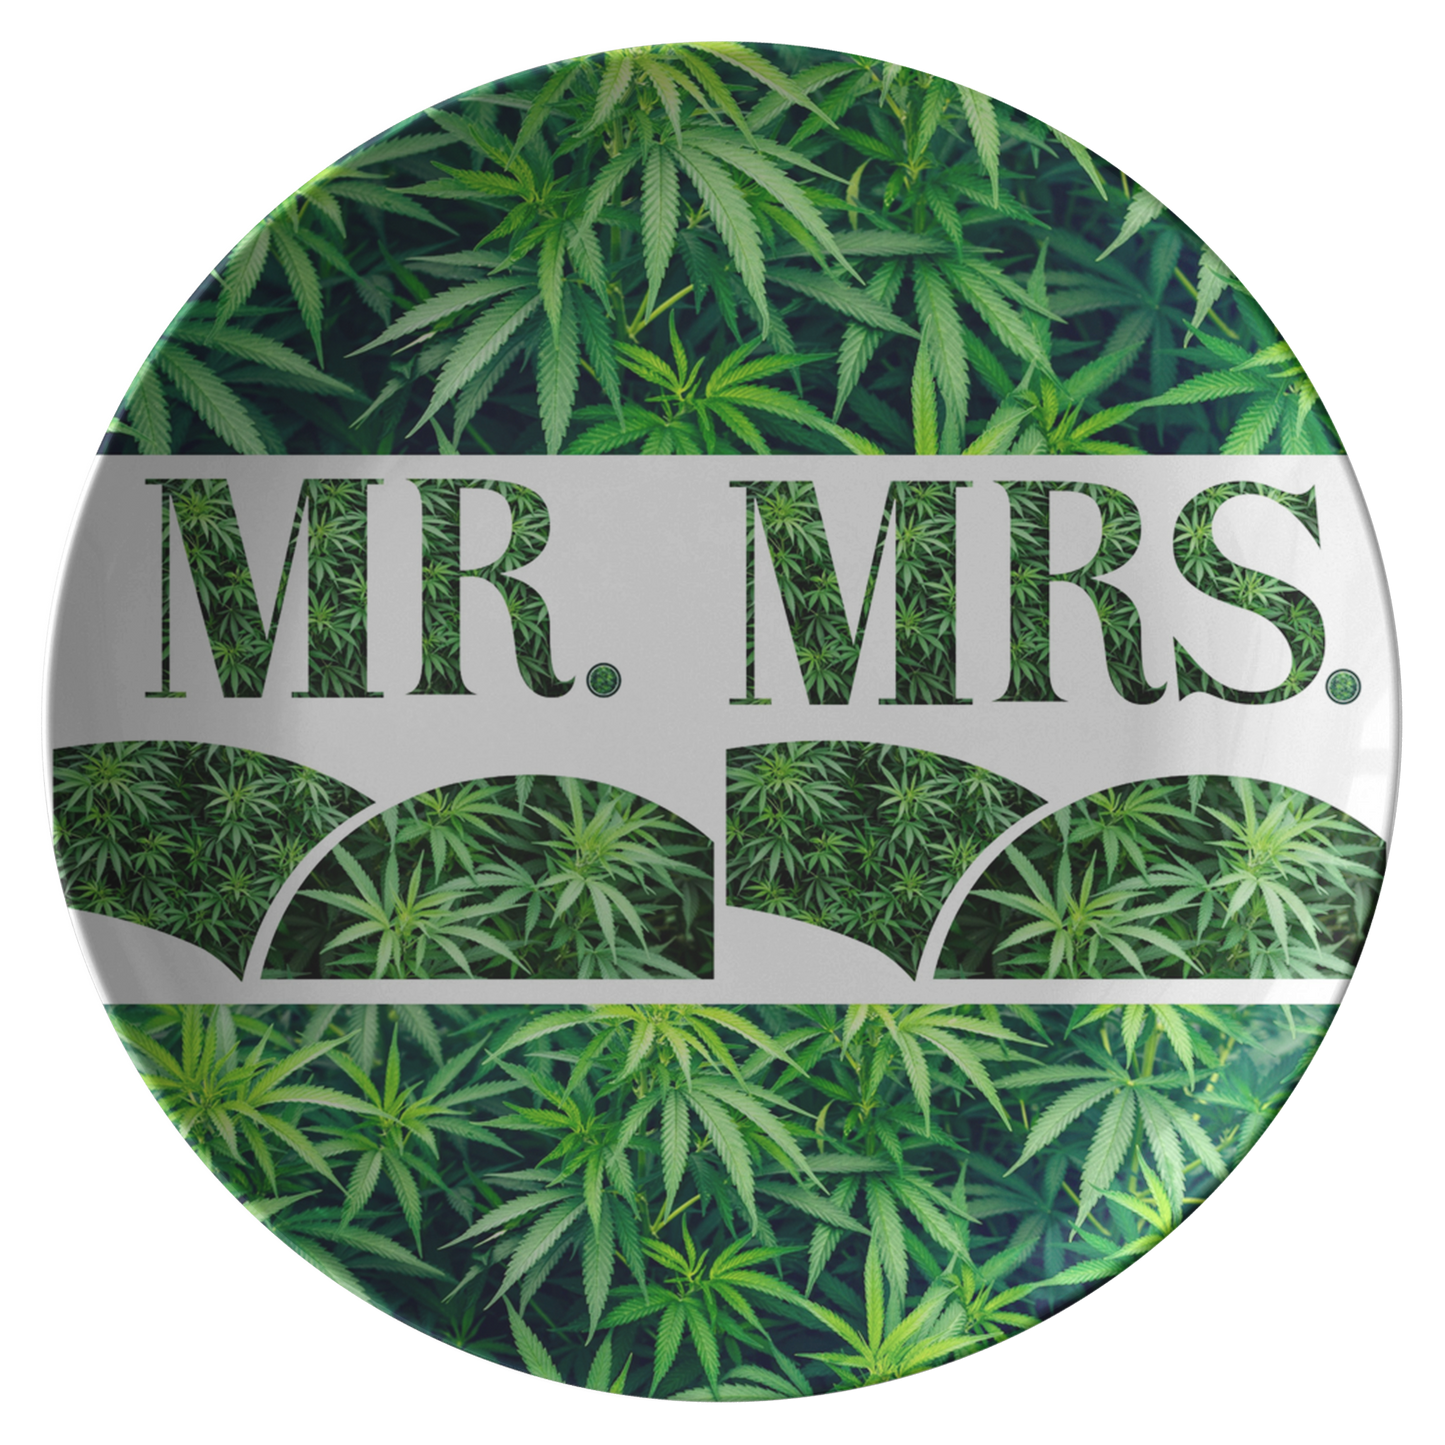 Mr. & Mrs. Cannabis Plate